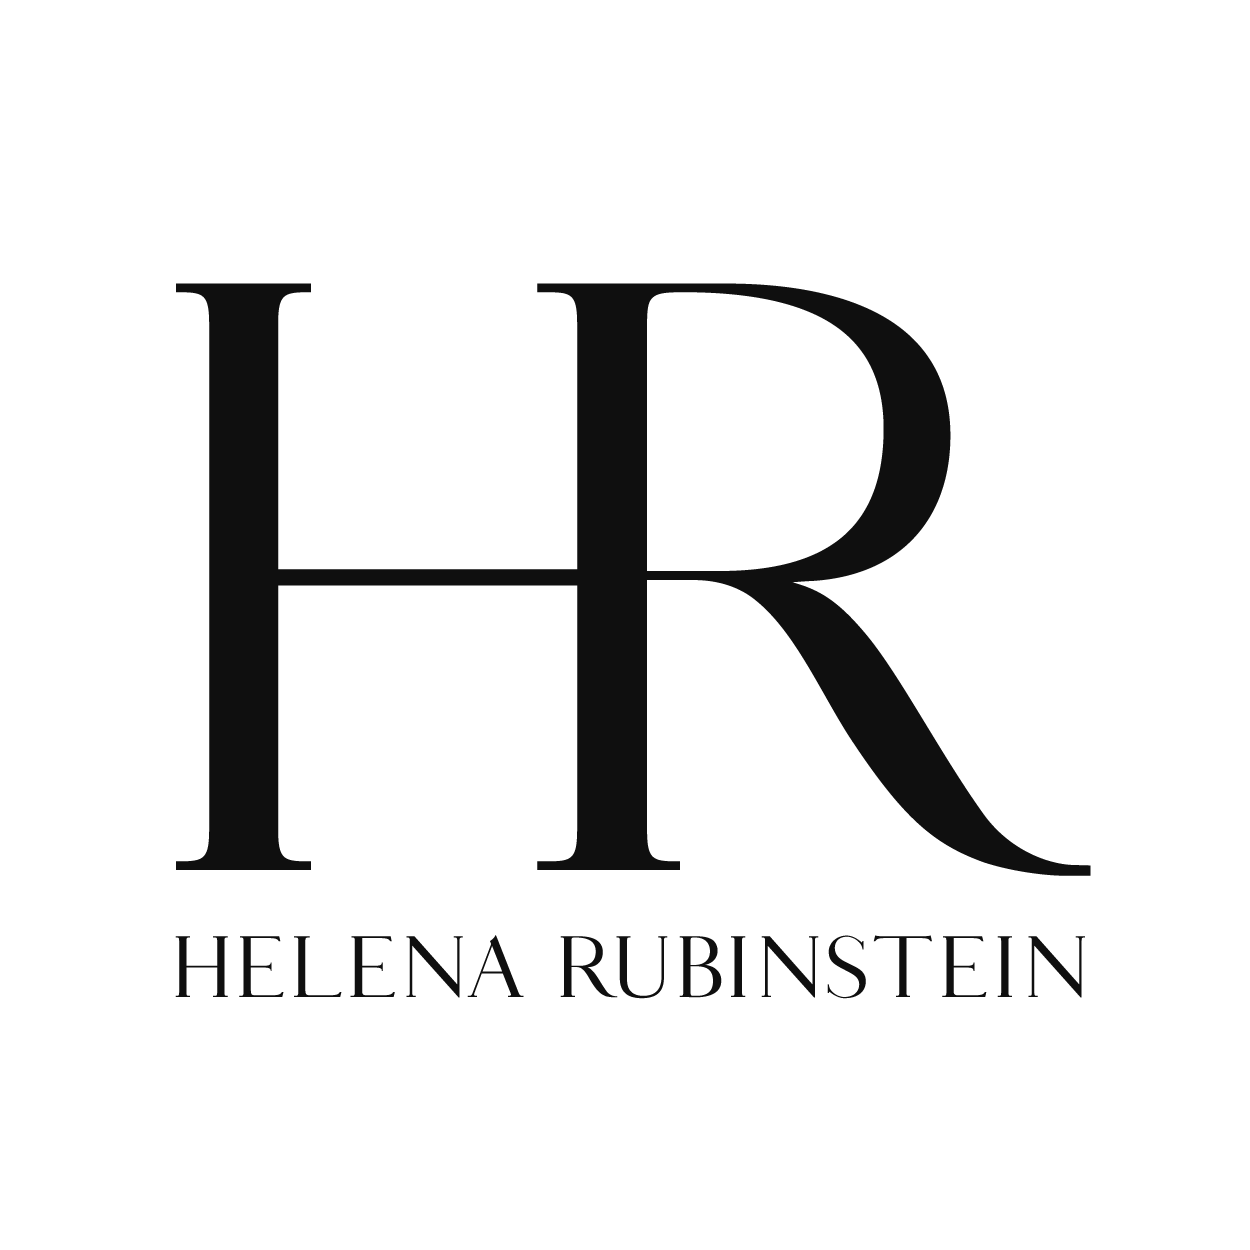 Über Helena Rubinstein